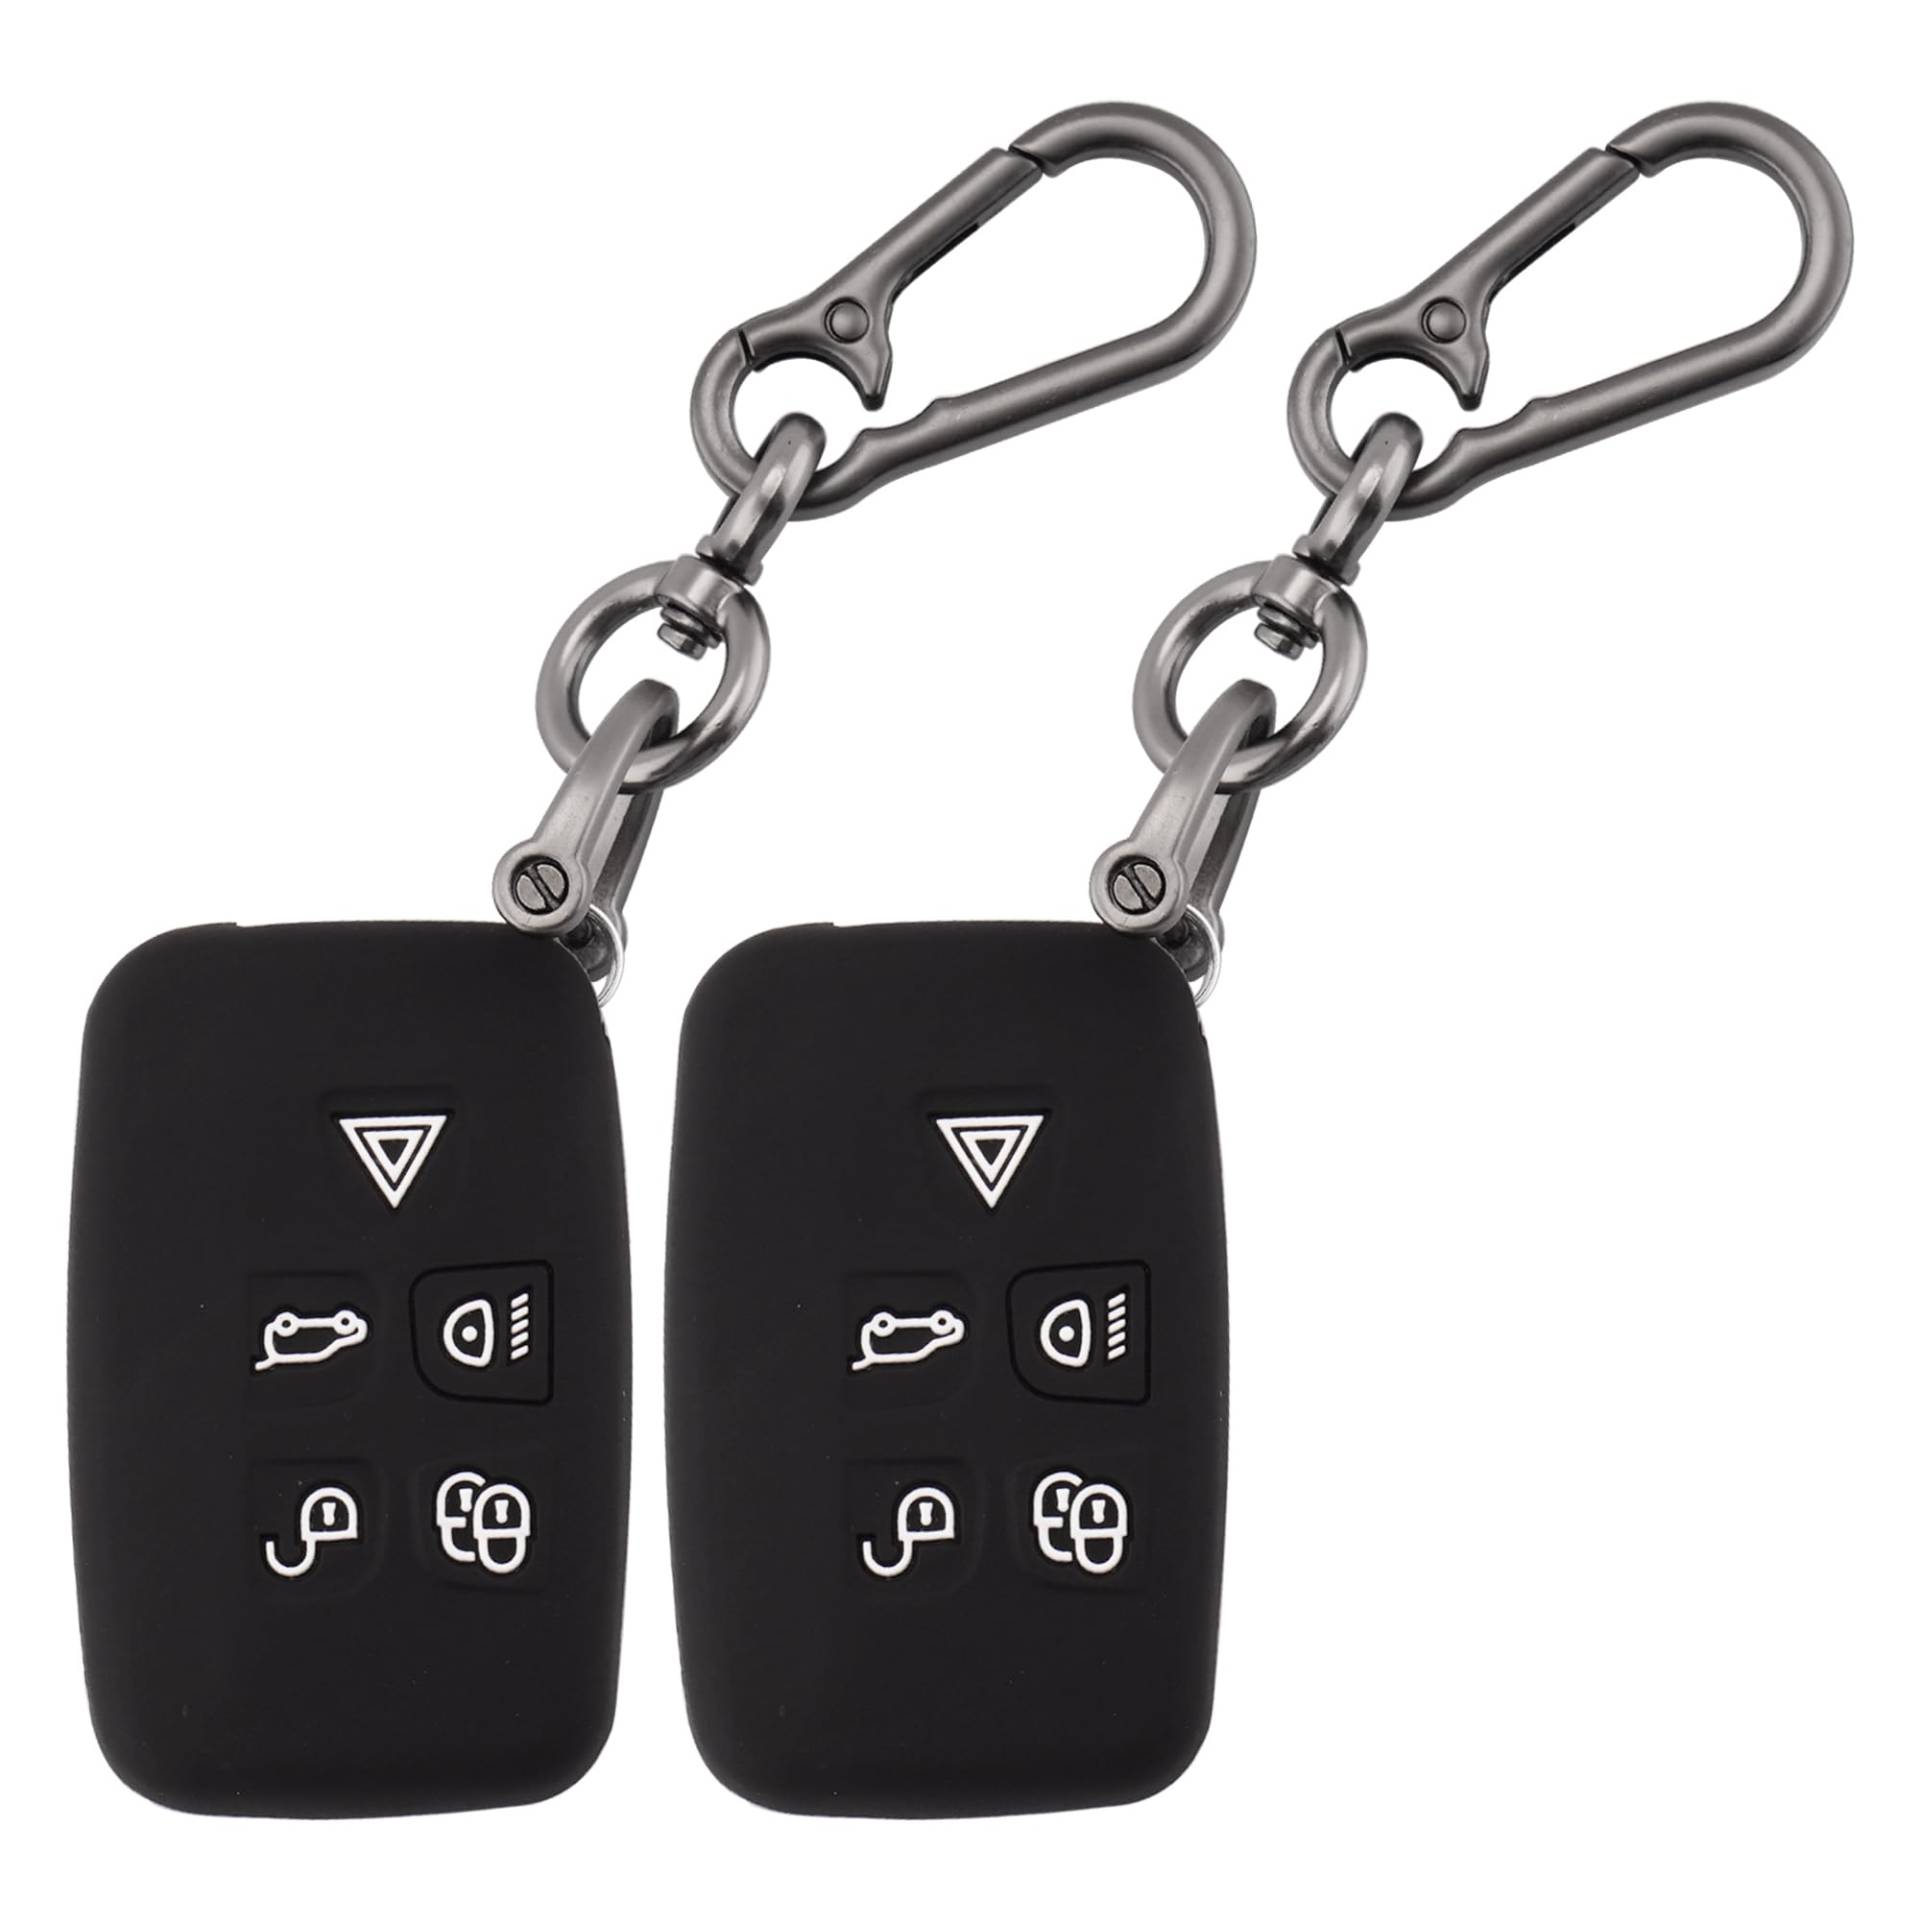 ERMWALR Auto-Schlüsselanhänger-Abdeckung, passend für Land Rover LR4 Range Rover Sport Evoque Jaguar XF XJ XJL F-pace, 5-Tasten-Schlüsselanhänger-Hülle mit Schlüsselanhänger, 2 Stück (Rov-BB) von ERMWALR